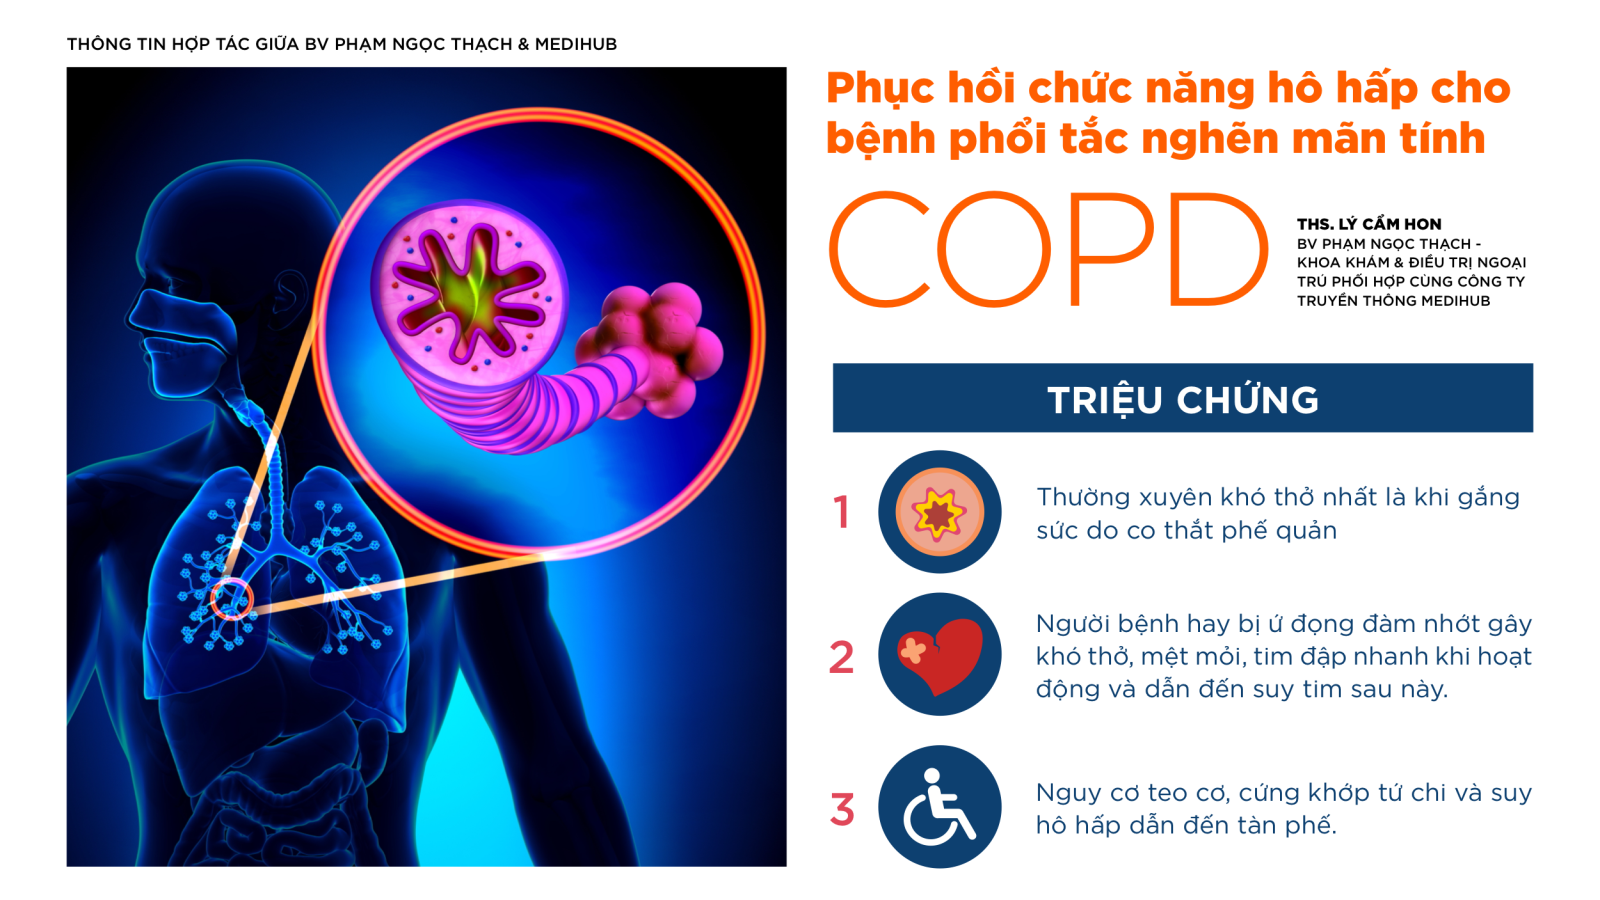 Phục hồi chức năng hô hấp cho bệnh phổi tắc nghẽn mạn tính (COPD)